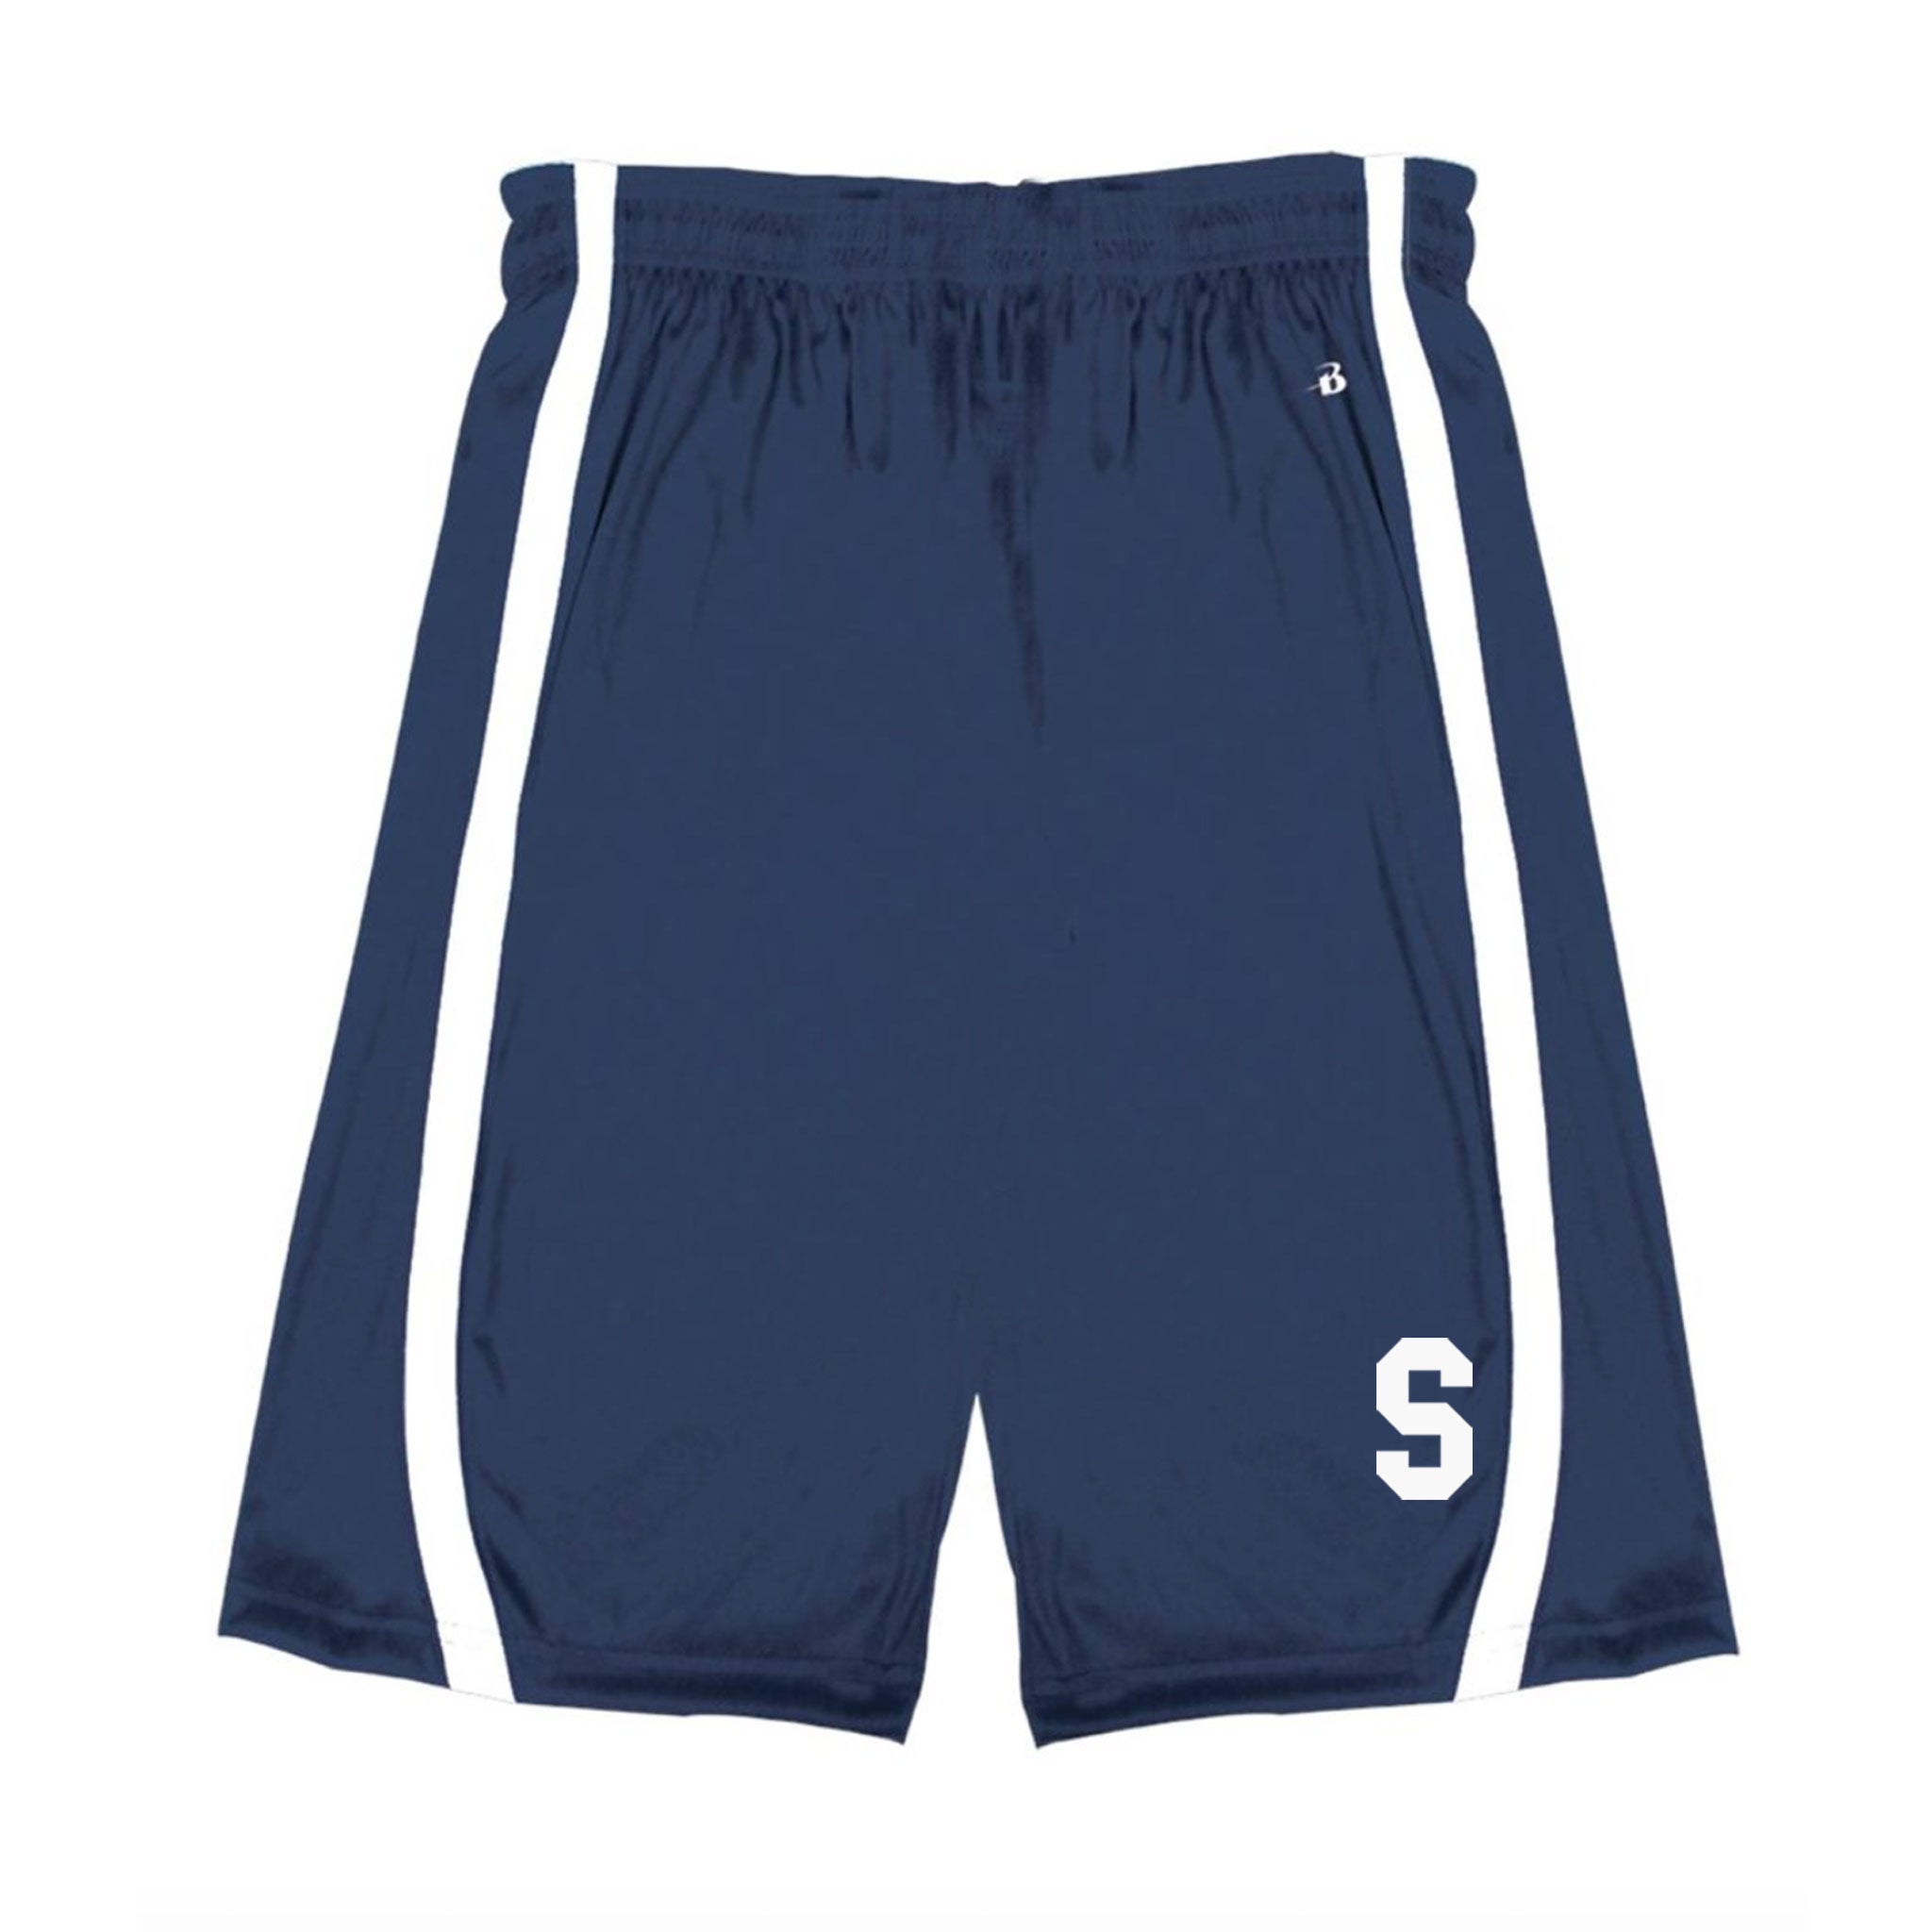 Sicomac Youth Athletic Shorts